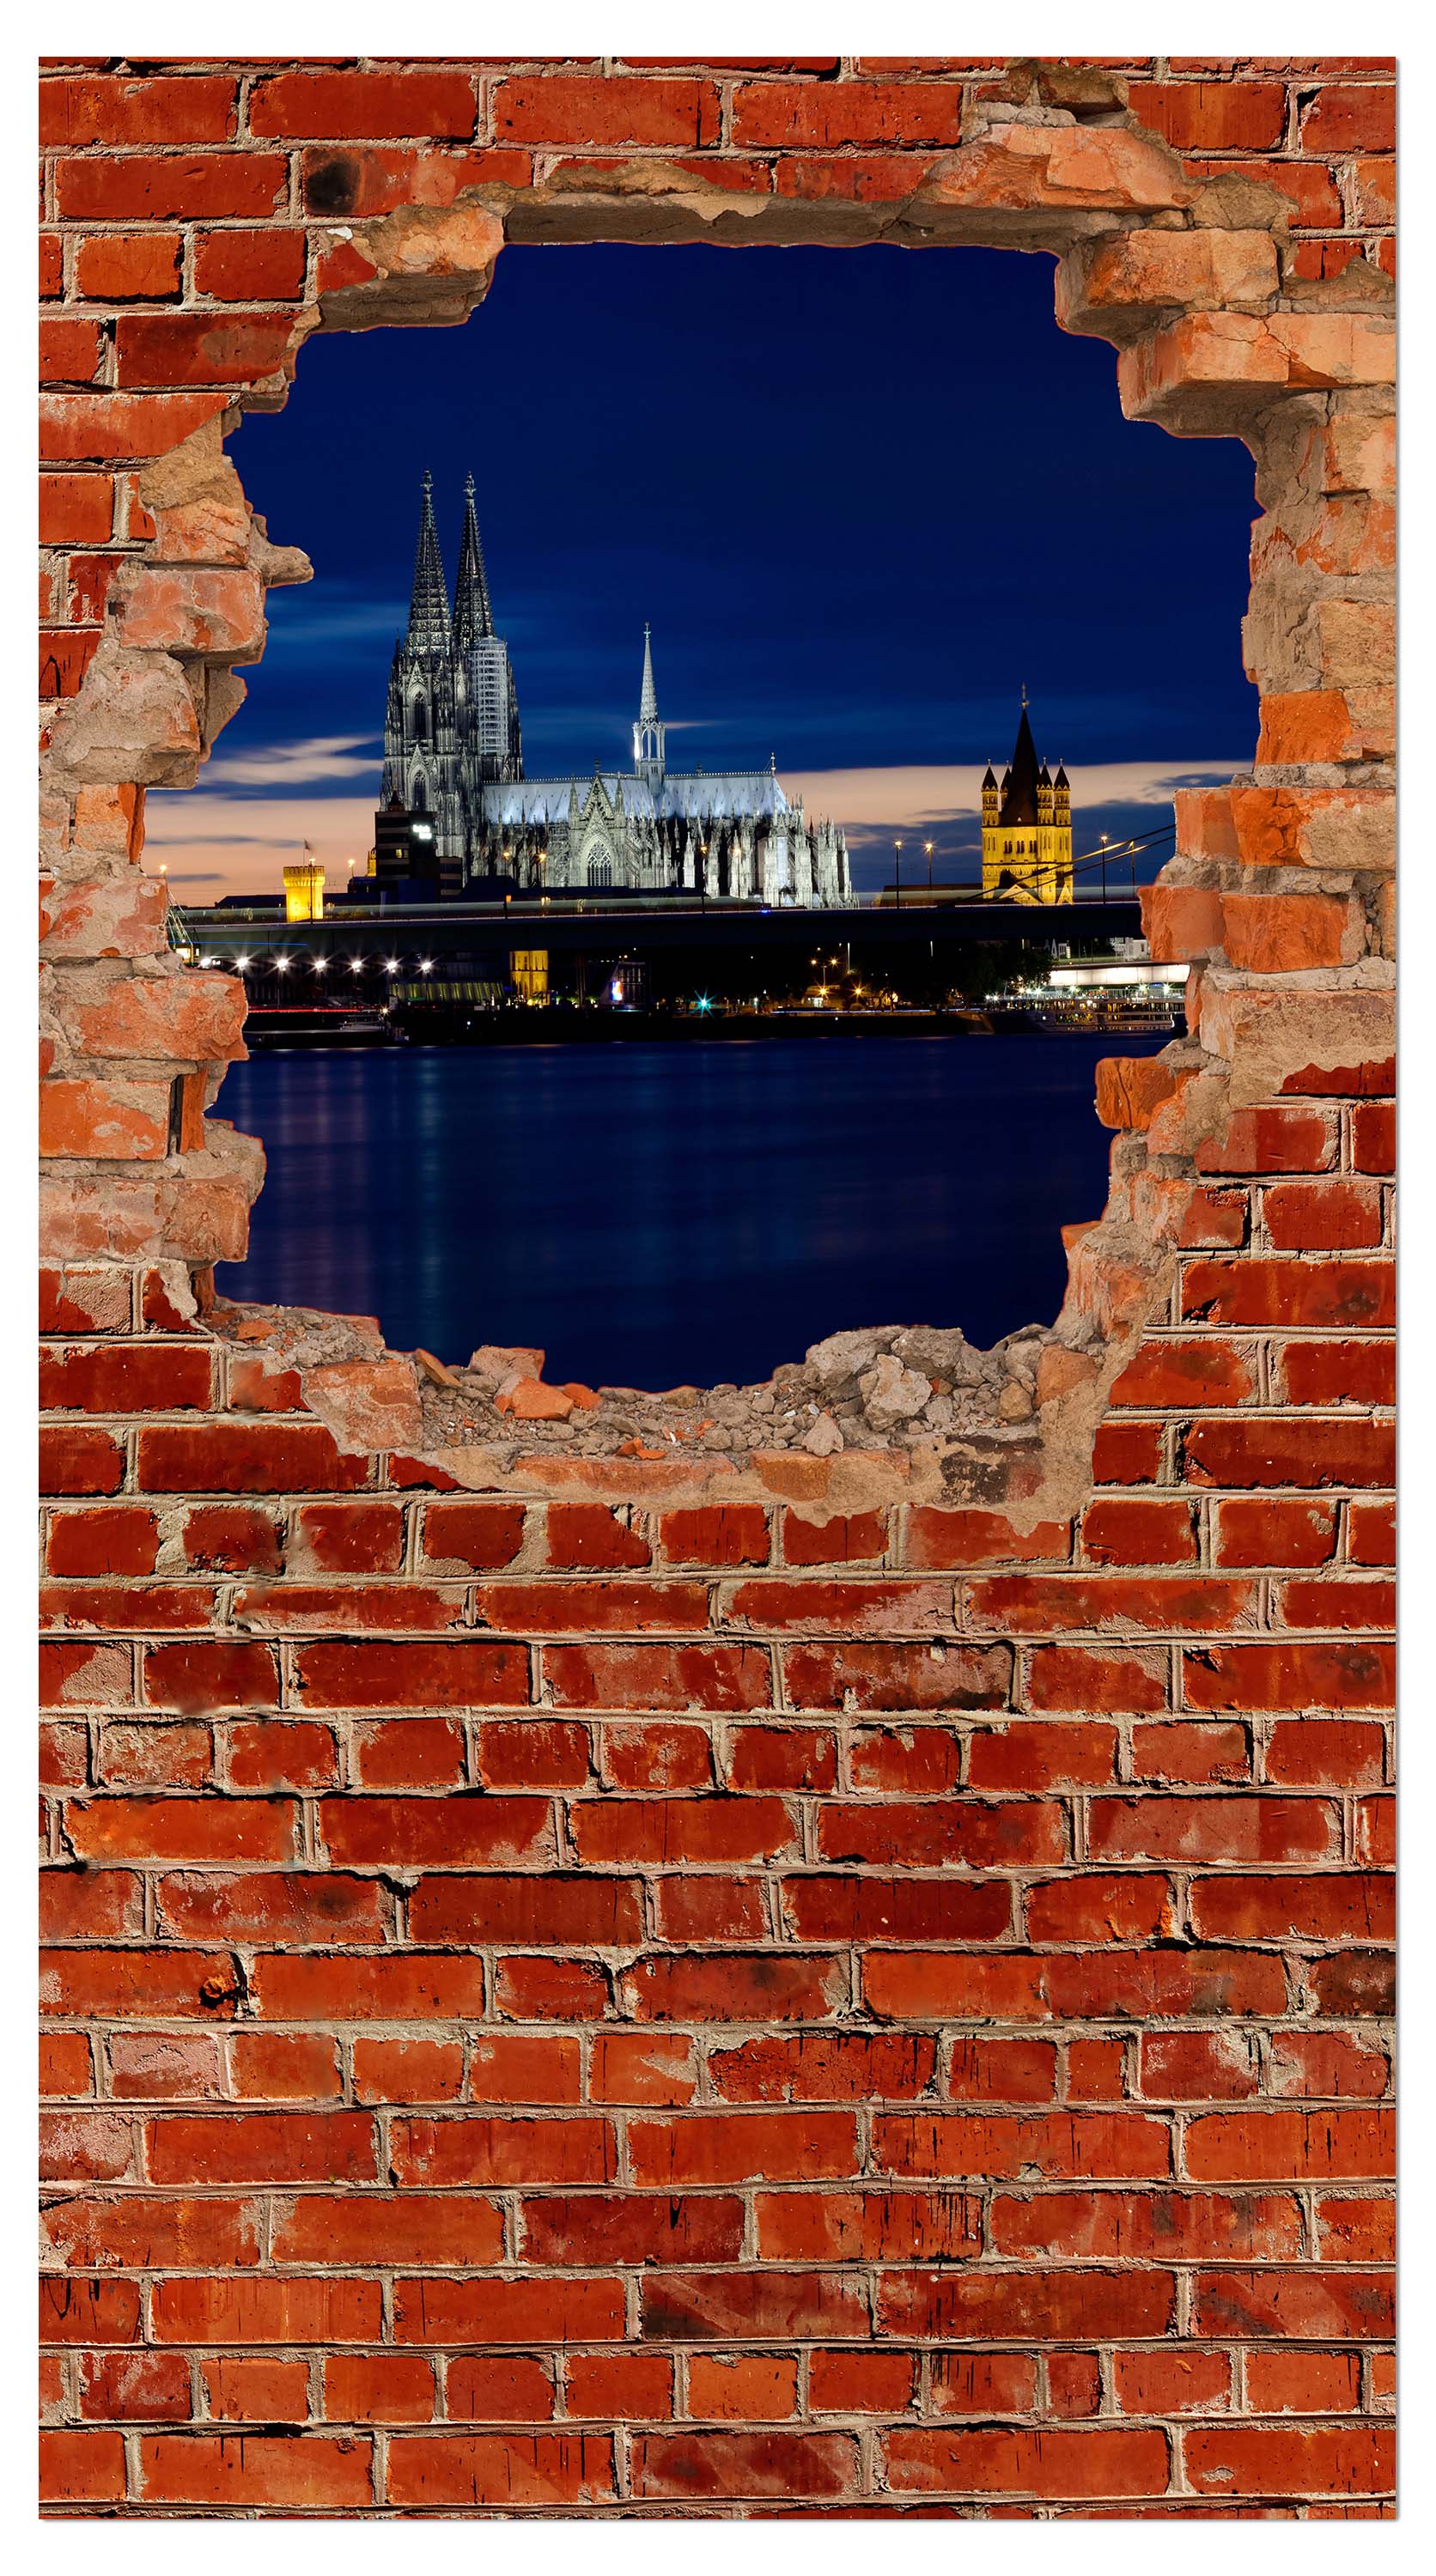 Garderobe Köln bei Nacht - Roter Backstein M0613 entdecken - Bild 4